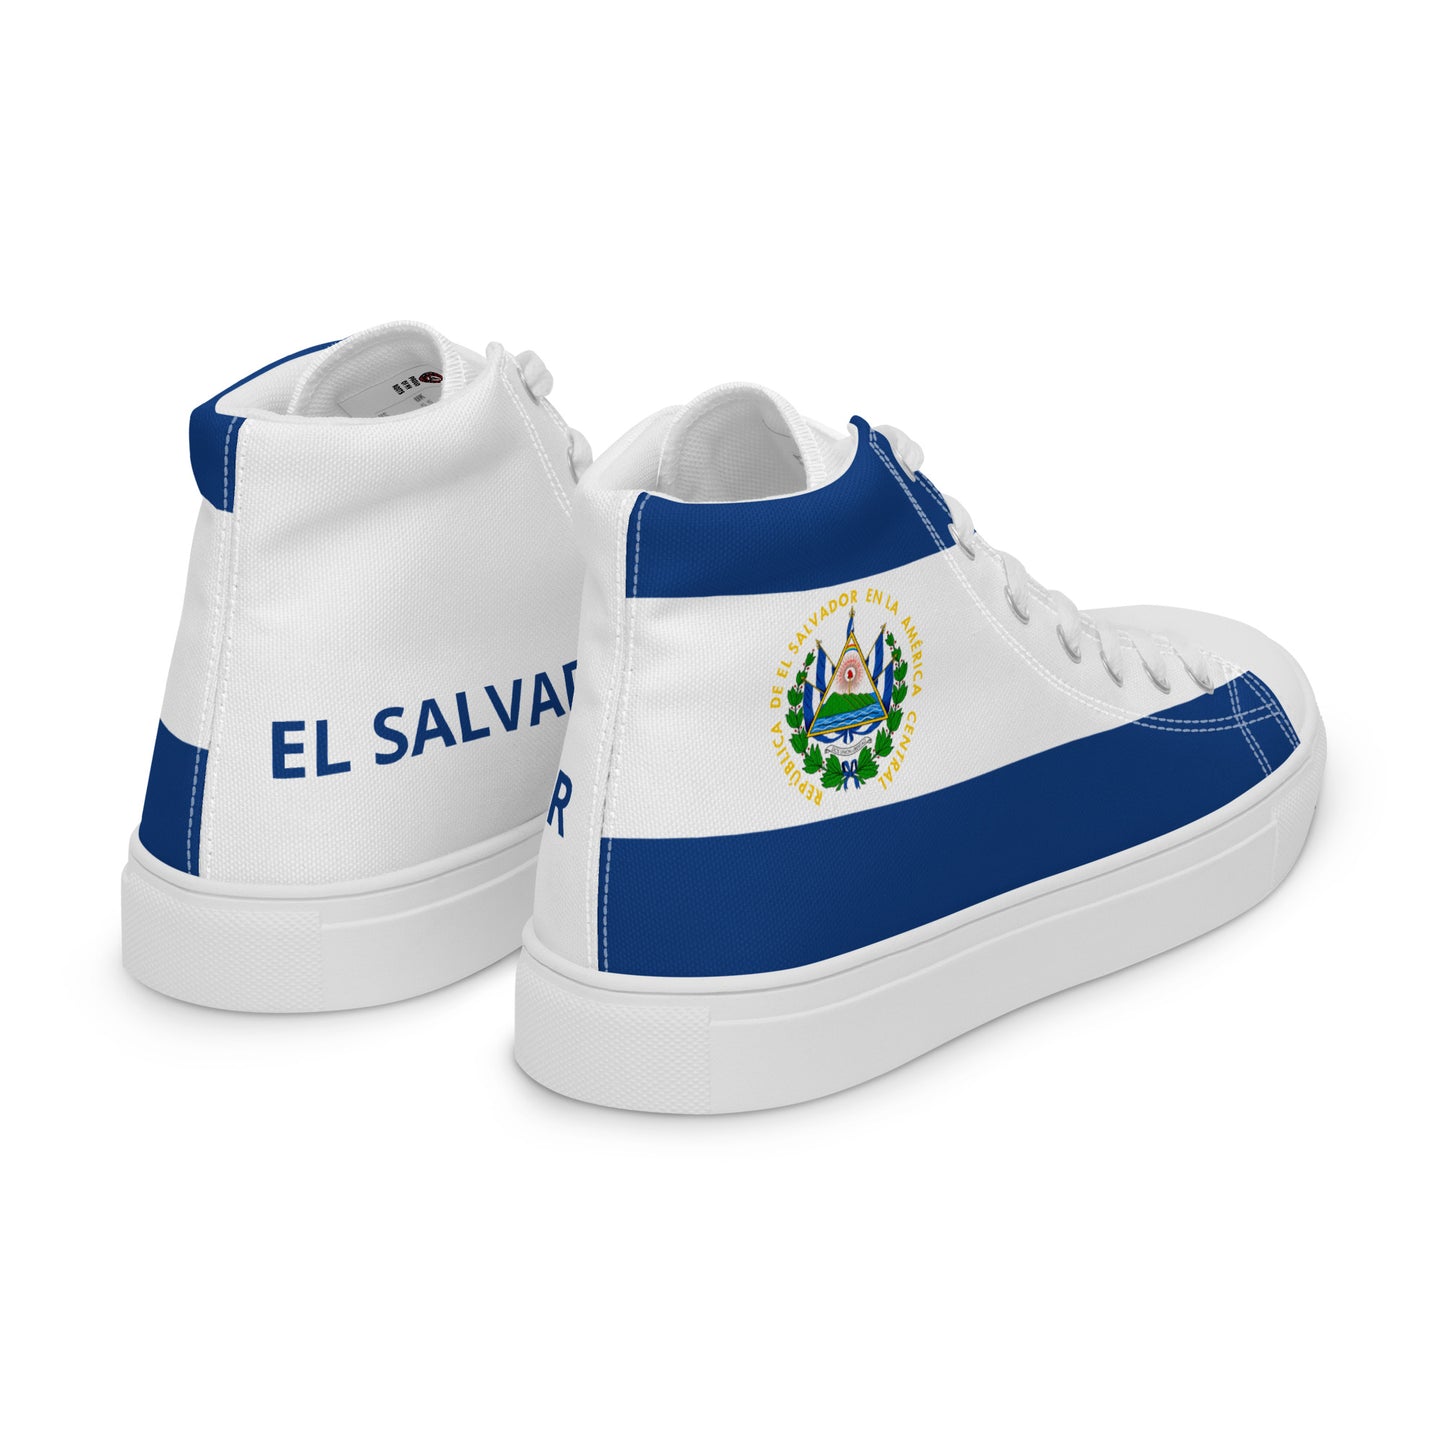 El Salvador - Women - Bandera - High top shoes